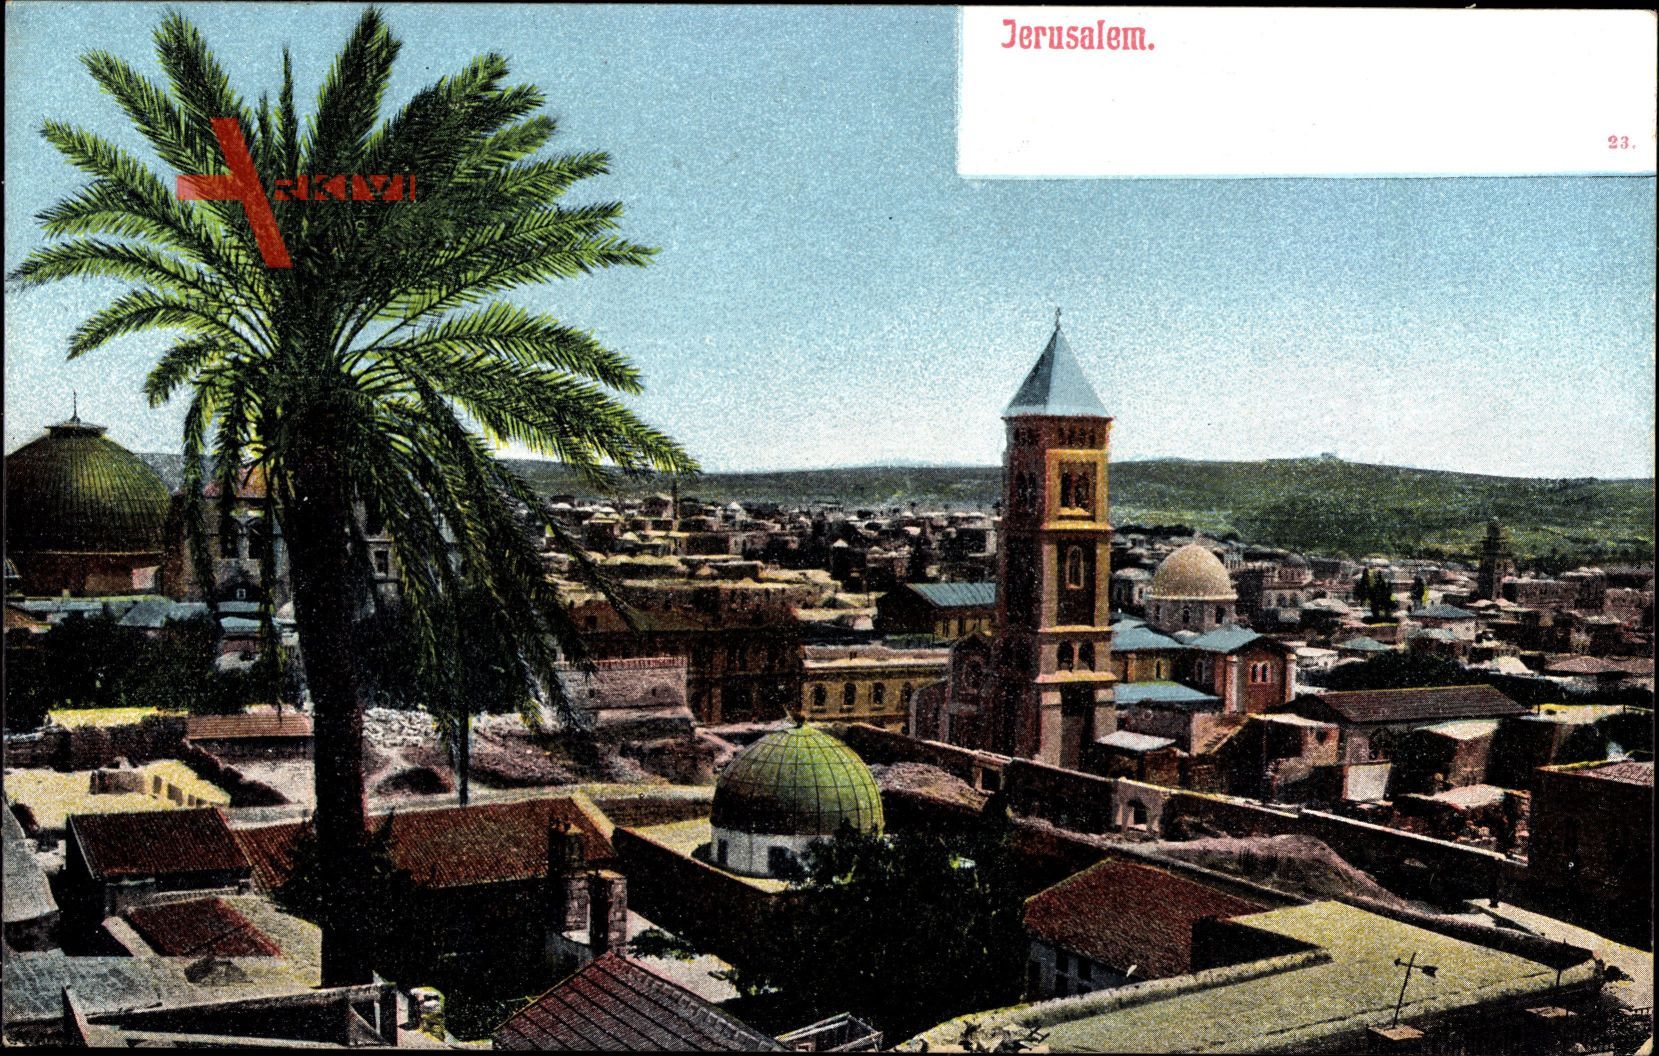 Jerusalem Israel, Blick auf den Ort, Palme, Minarett, Moschee